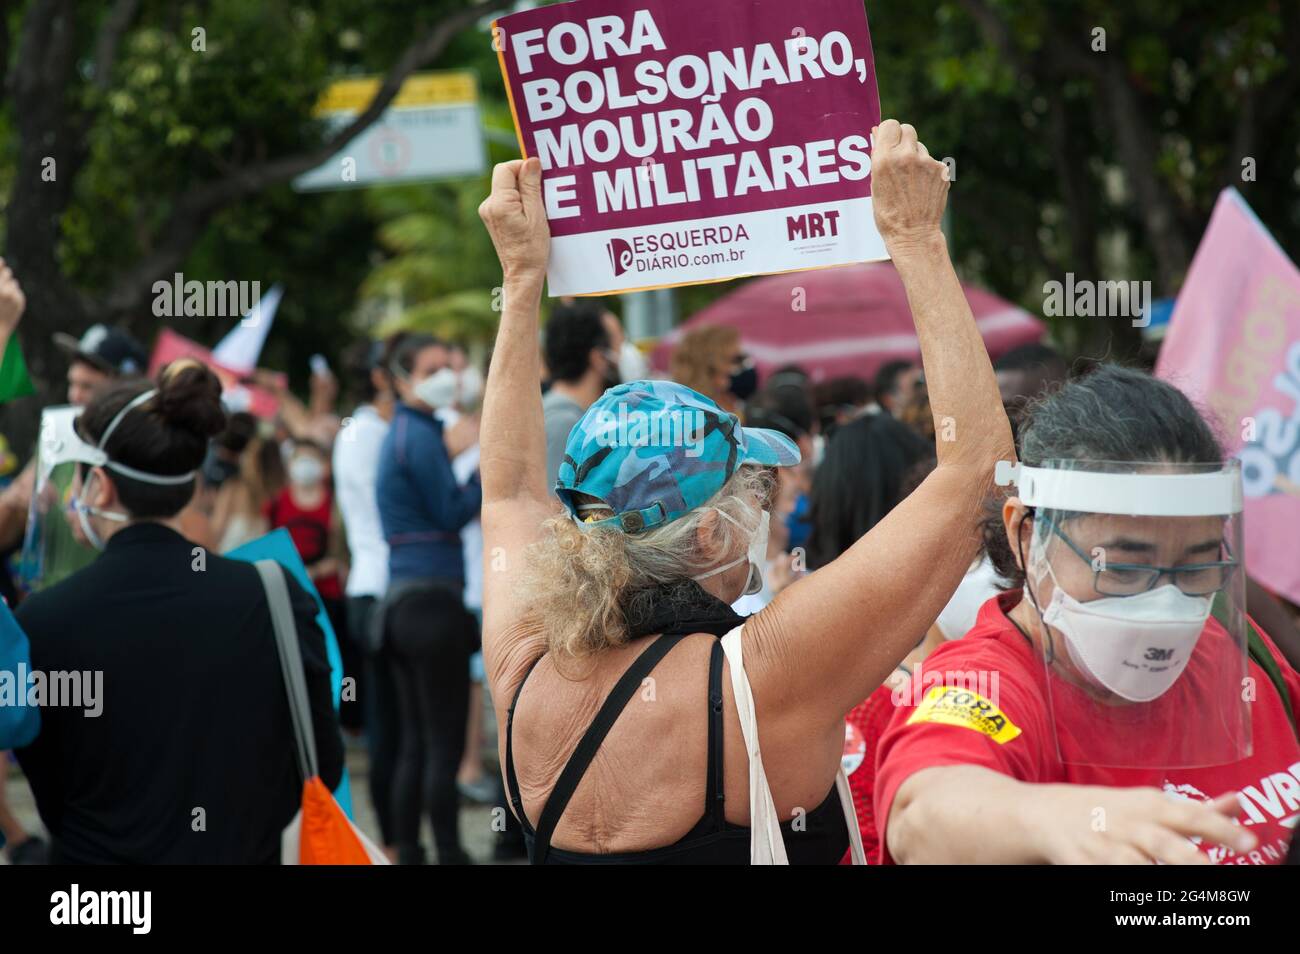 America del Sud - 19 giugno 2021: La gente scese per le strade di Rio de Janeiro per protestare contro l'amministrazione del presidente brasiliano Jair Bolsonaro. Foto Stock